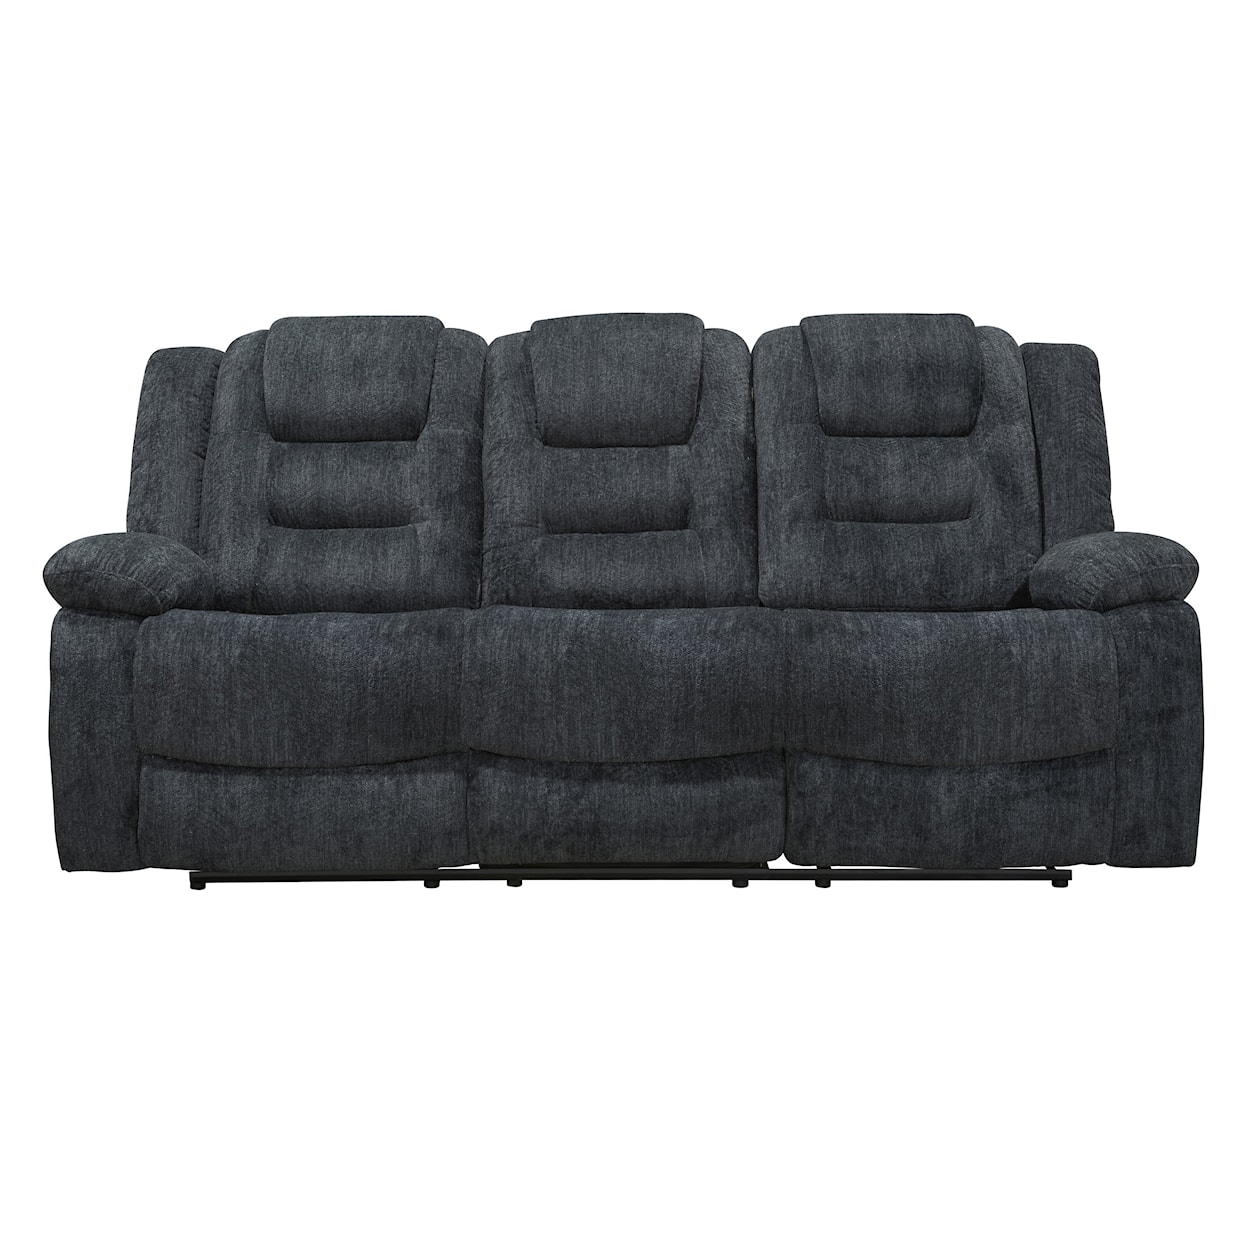 PH Bolton Manual Dual Reclining Sofa